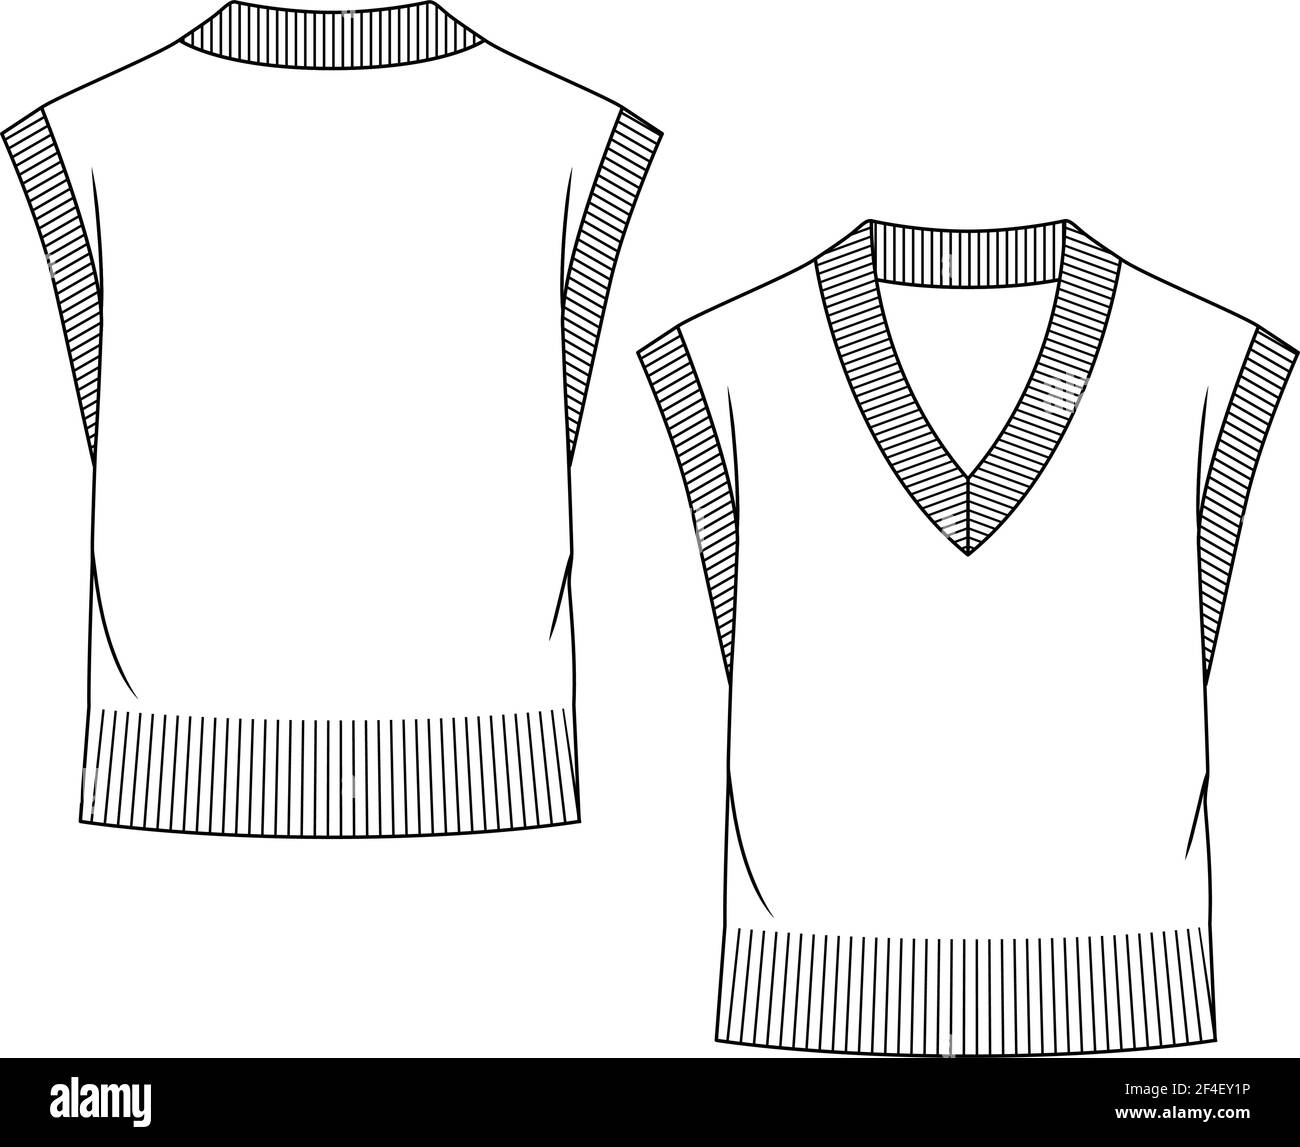 Modello di schizzo piatto di moda con maglia a V-Neck Sweater Vest ragazza. Illustrazione tecnica della moda. Cintura a costoletta larga Illustrazione Vettoriale